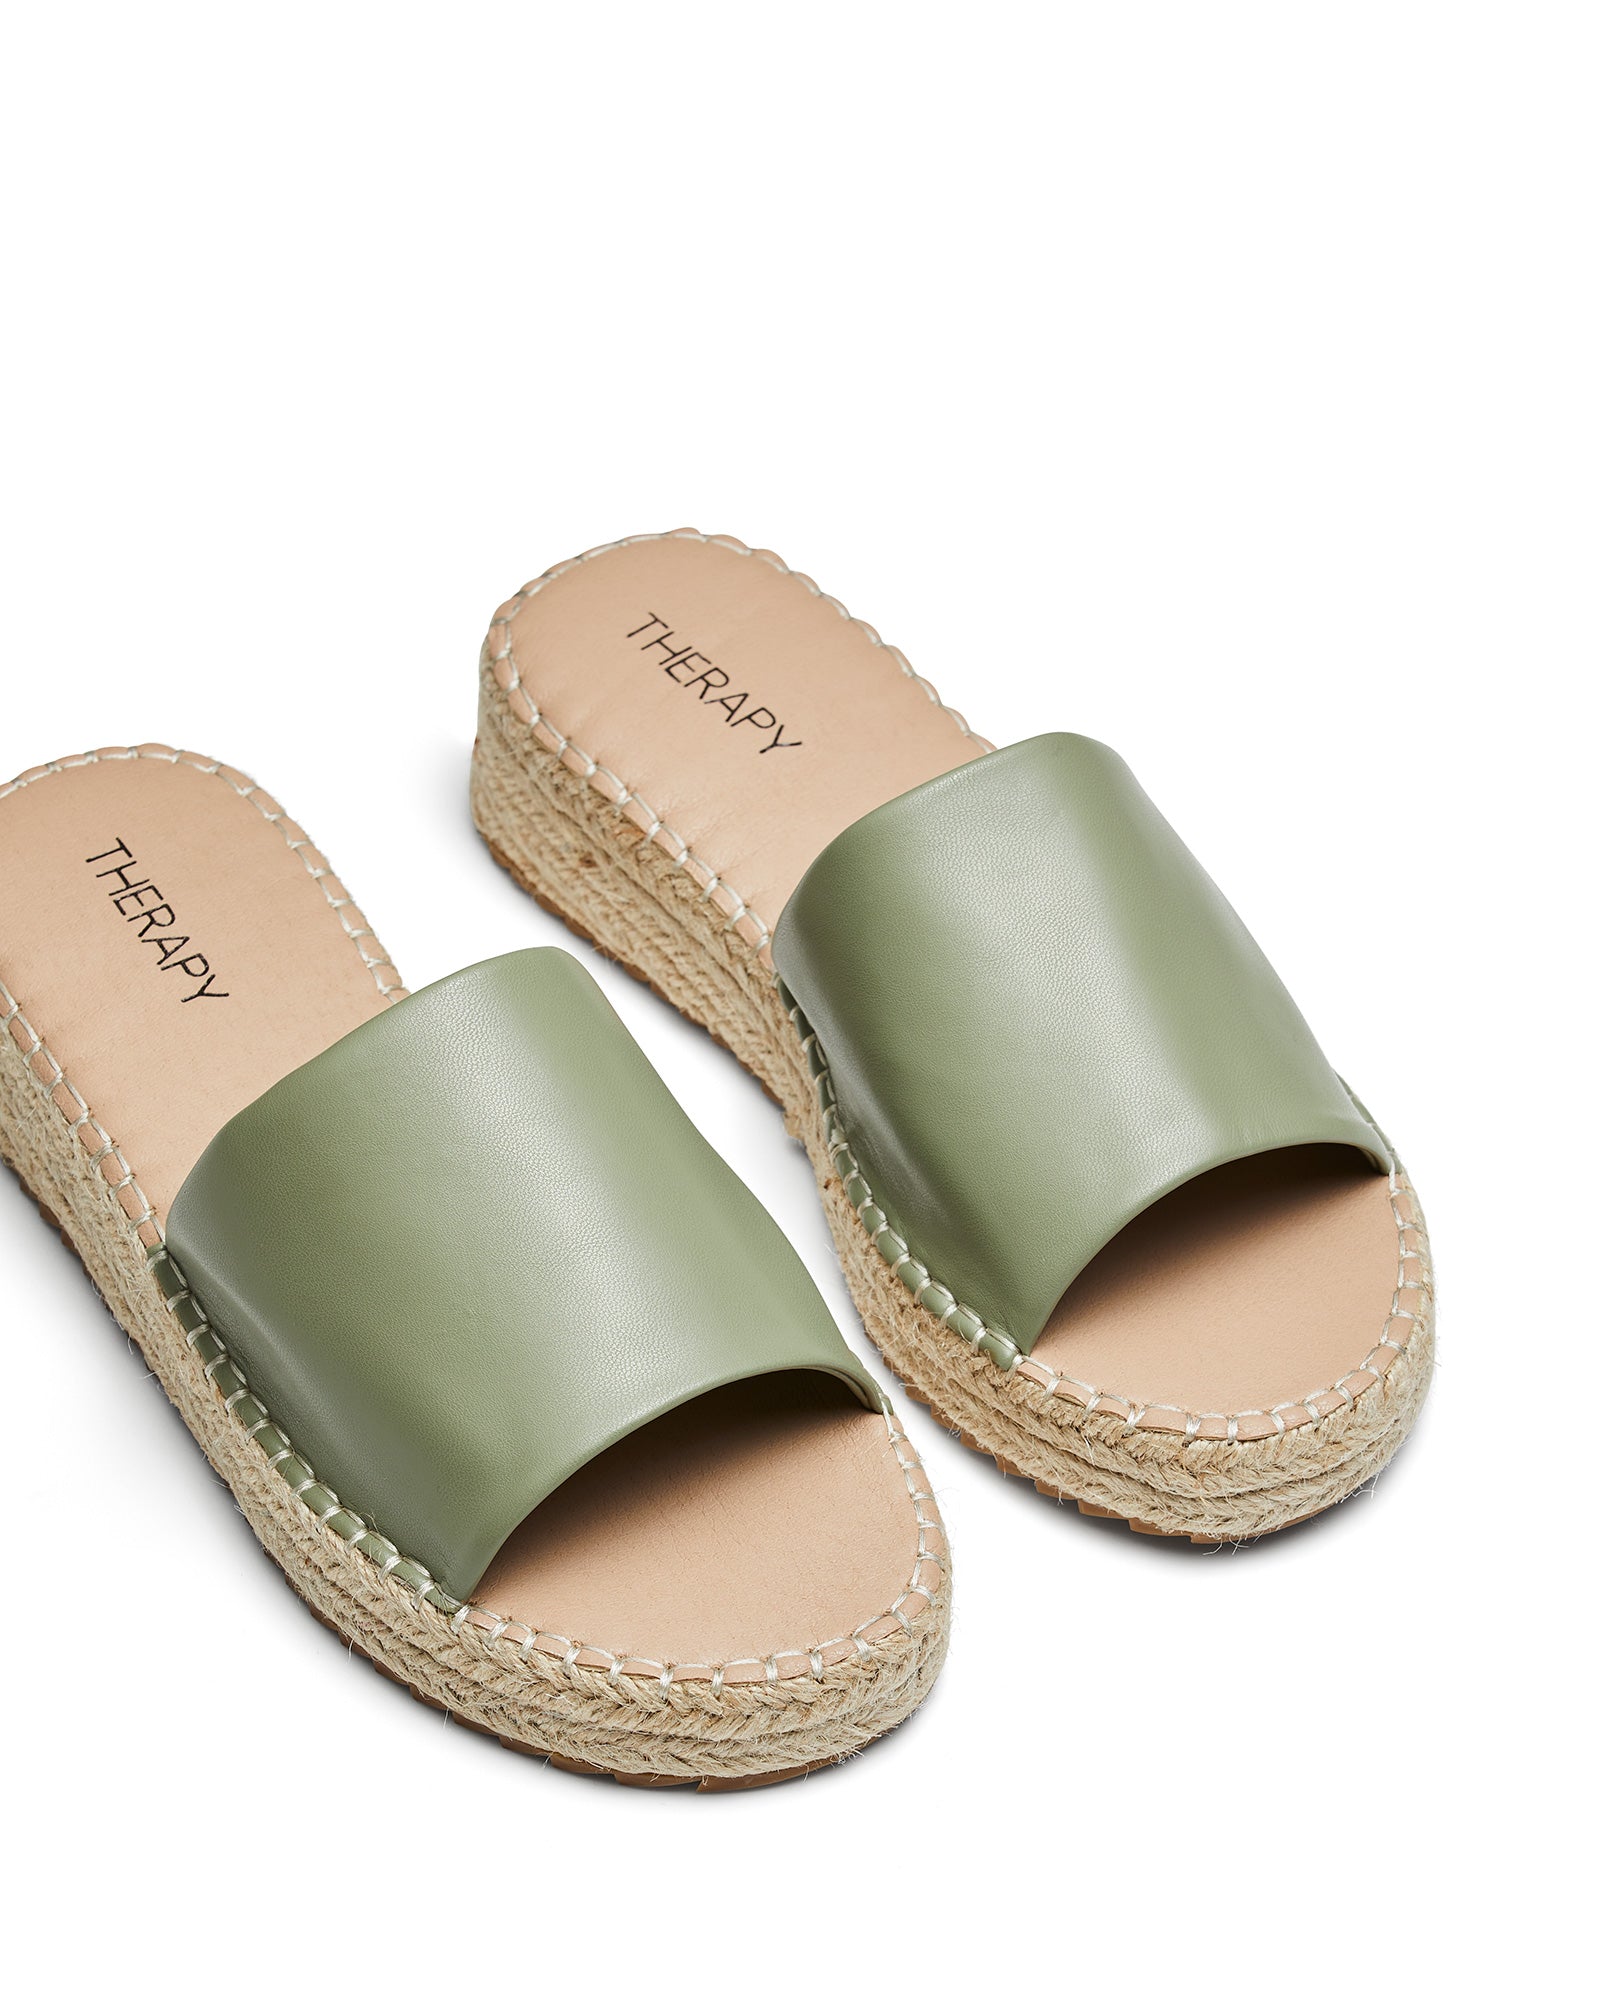 Therapy Shoes Boca Pistachio | Women's Slides | Sandals | Platform | Espadrille